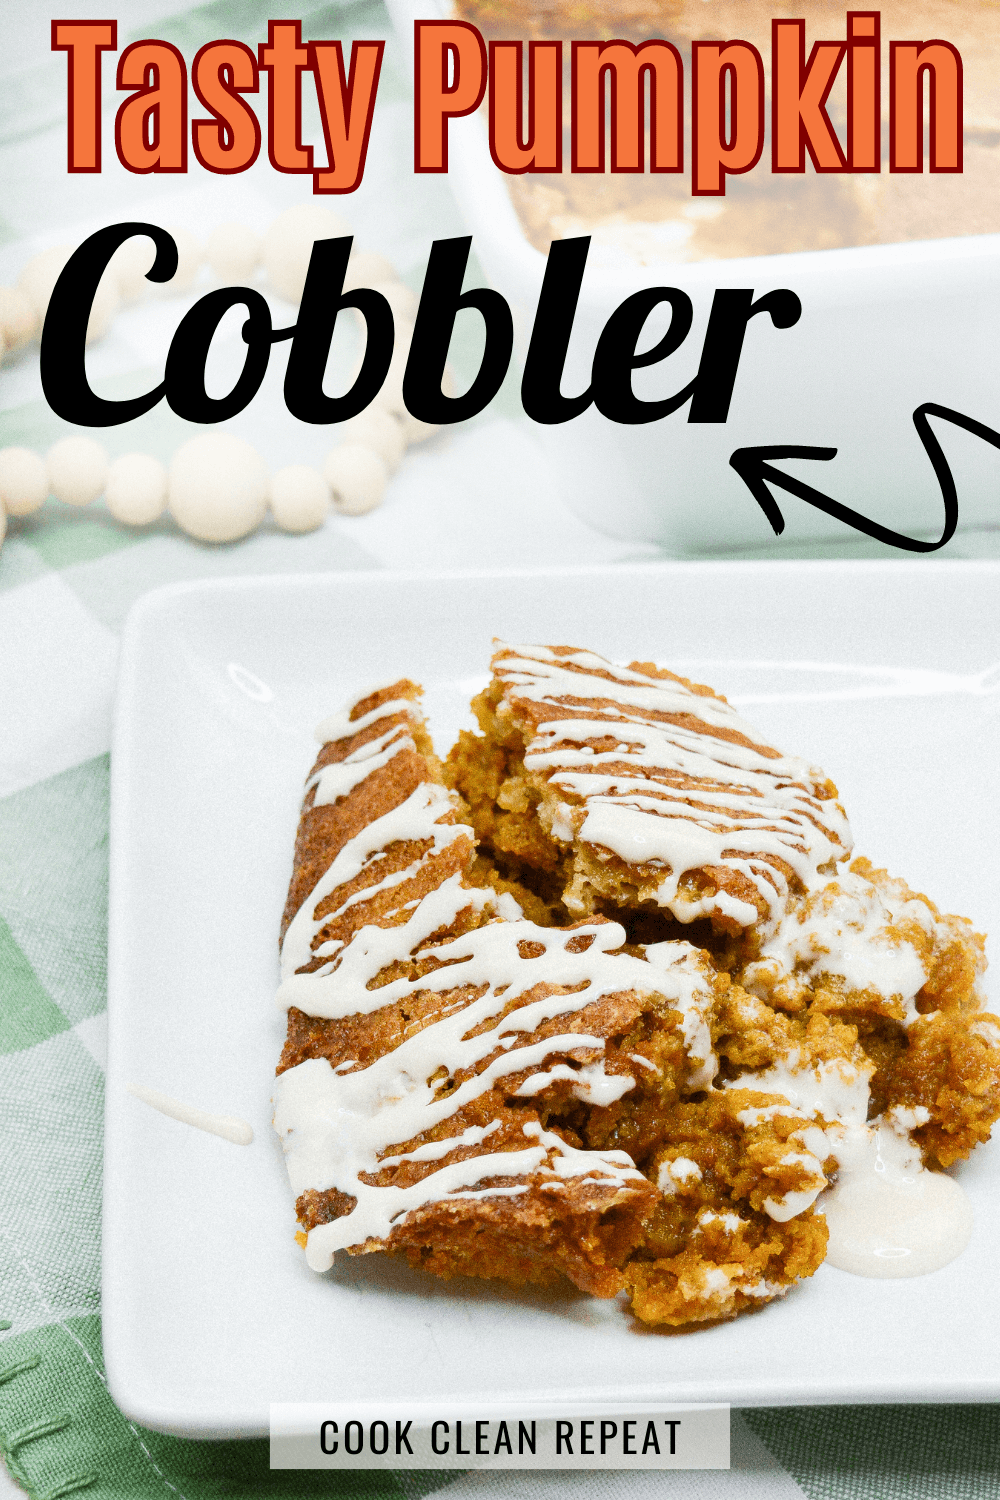 tasty pumpkin cobbler recipe